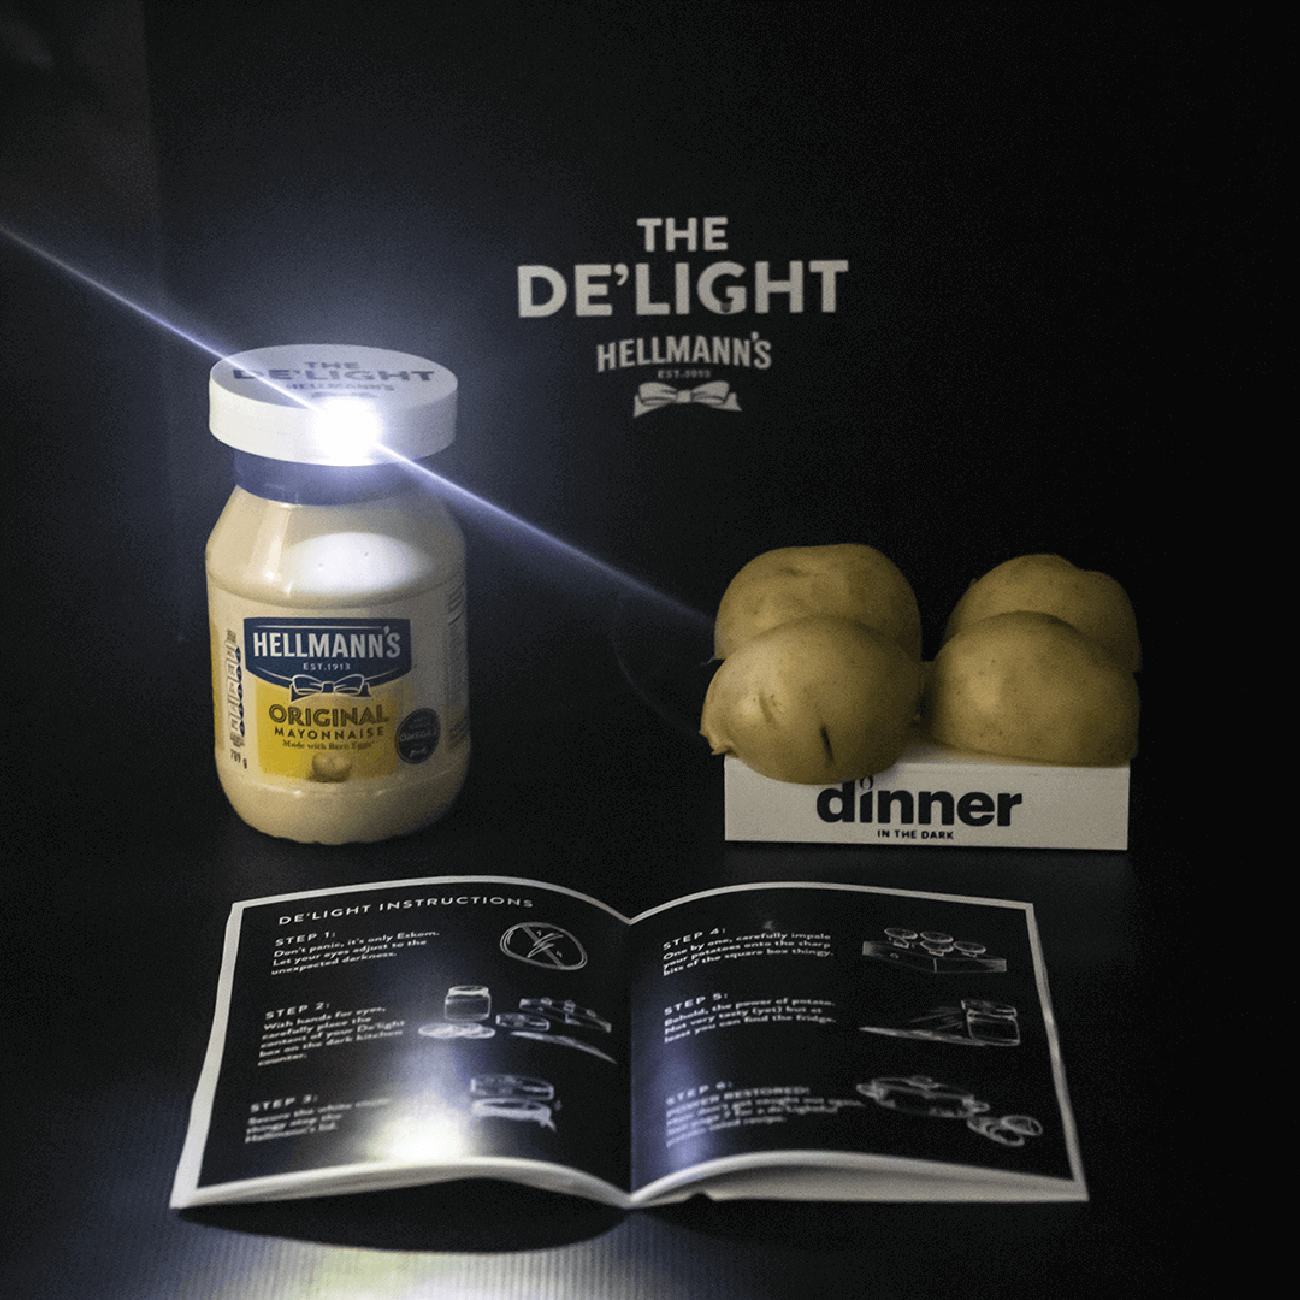 Hellmann's Dinner in the Dark